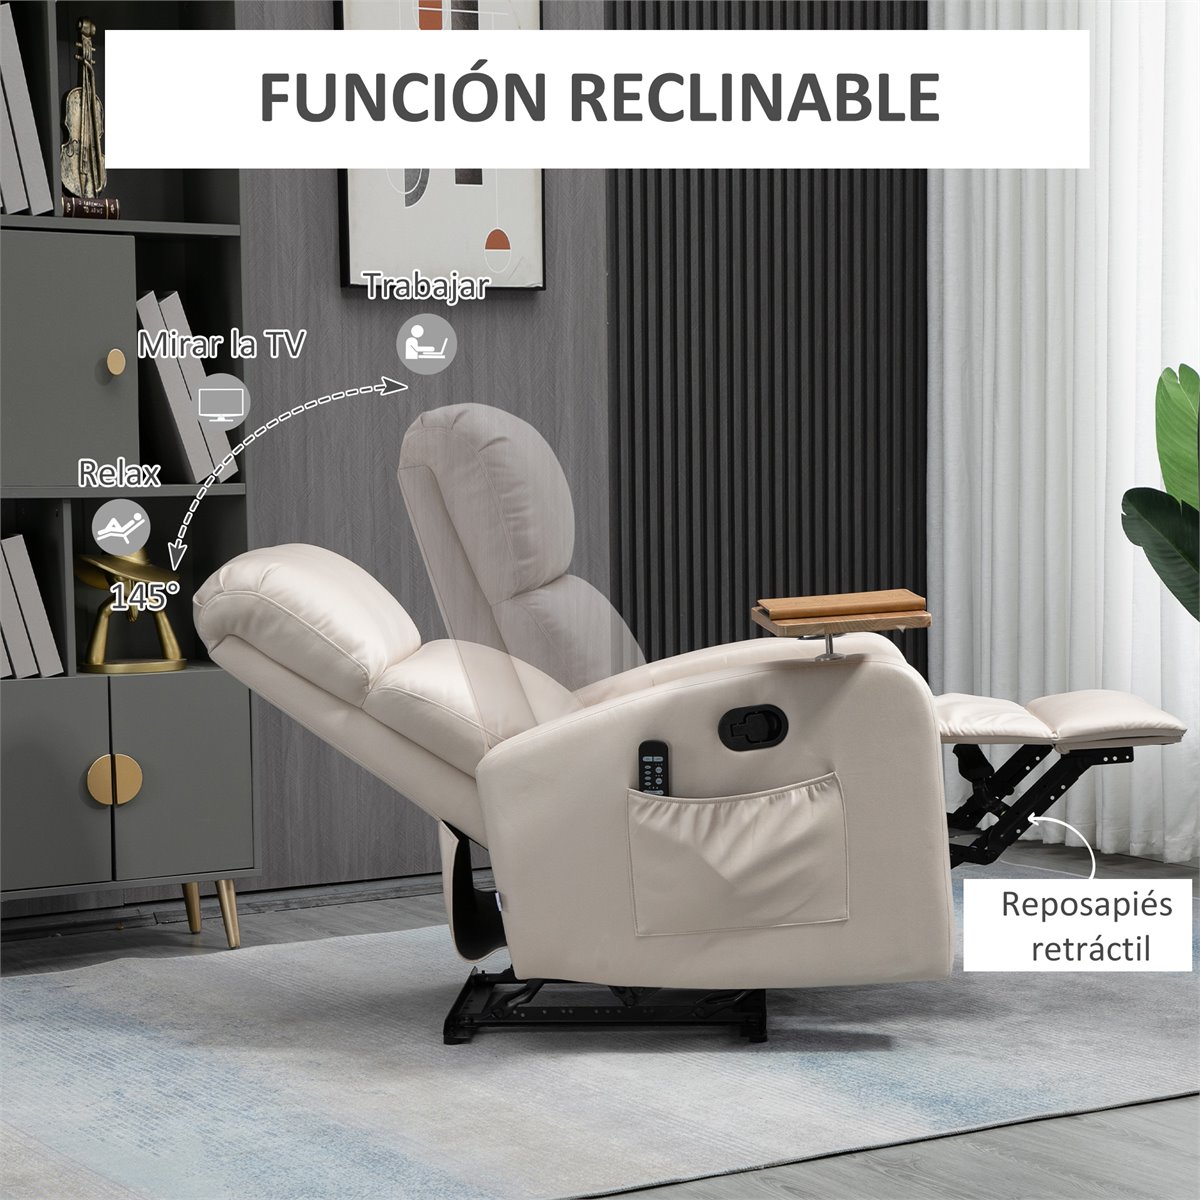 Este sillón relax eléctrico es reclinable y tiene función masaje - Showroom